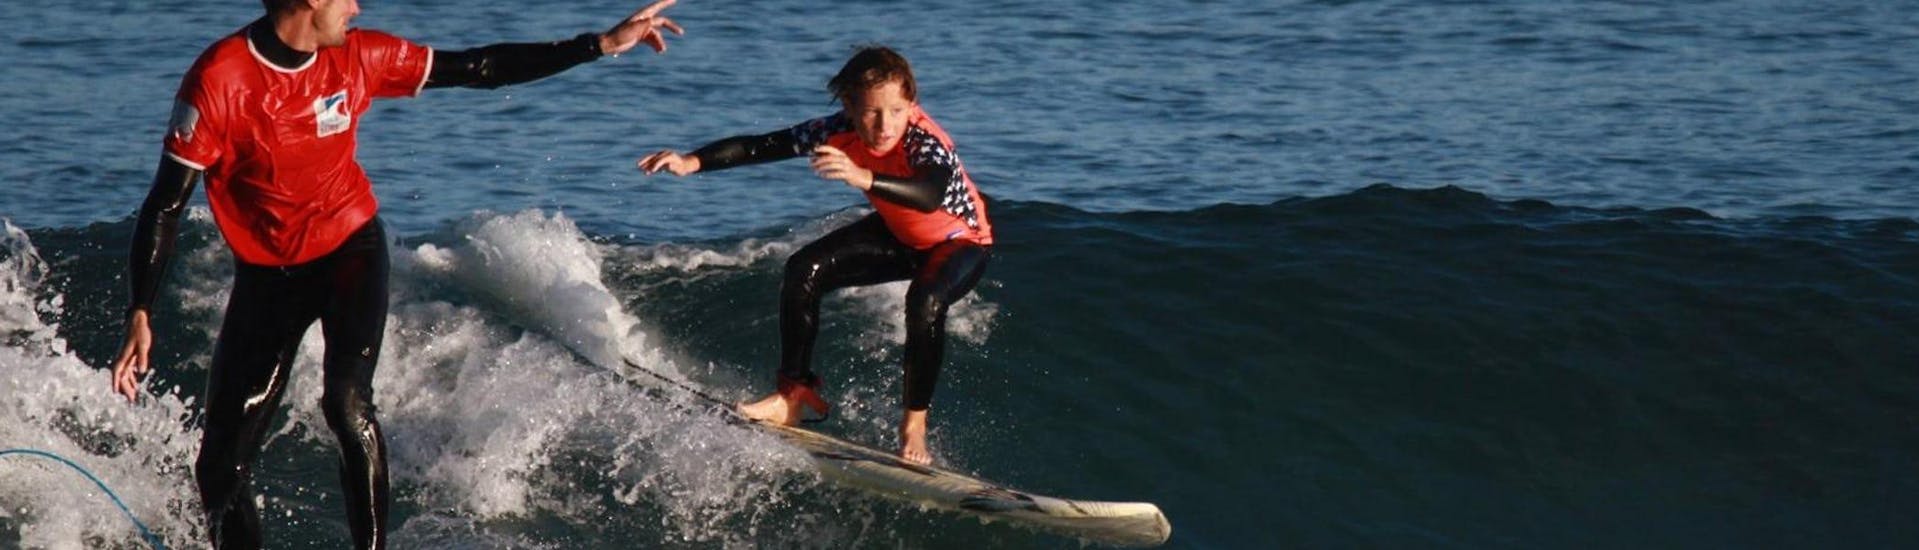 Lezioni di surf a Saint-Jean-de-Luz da 7 anni per surfisti avanzati.